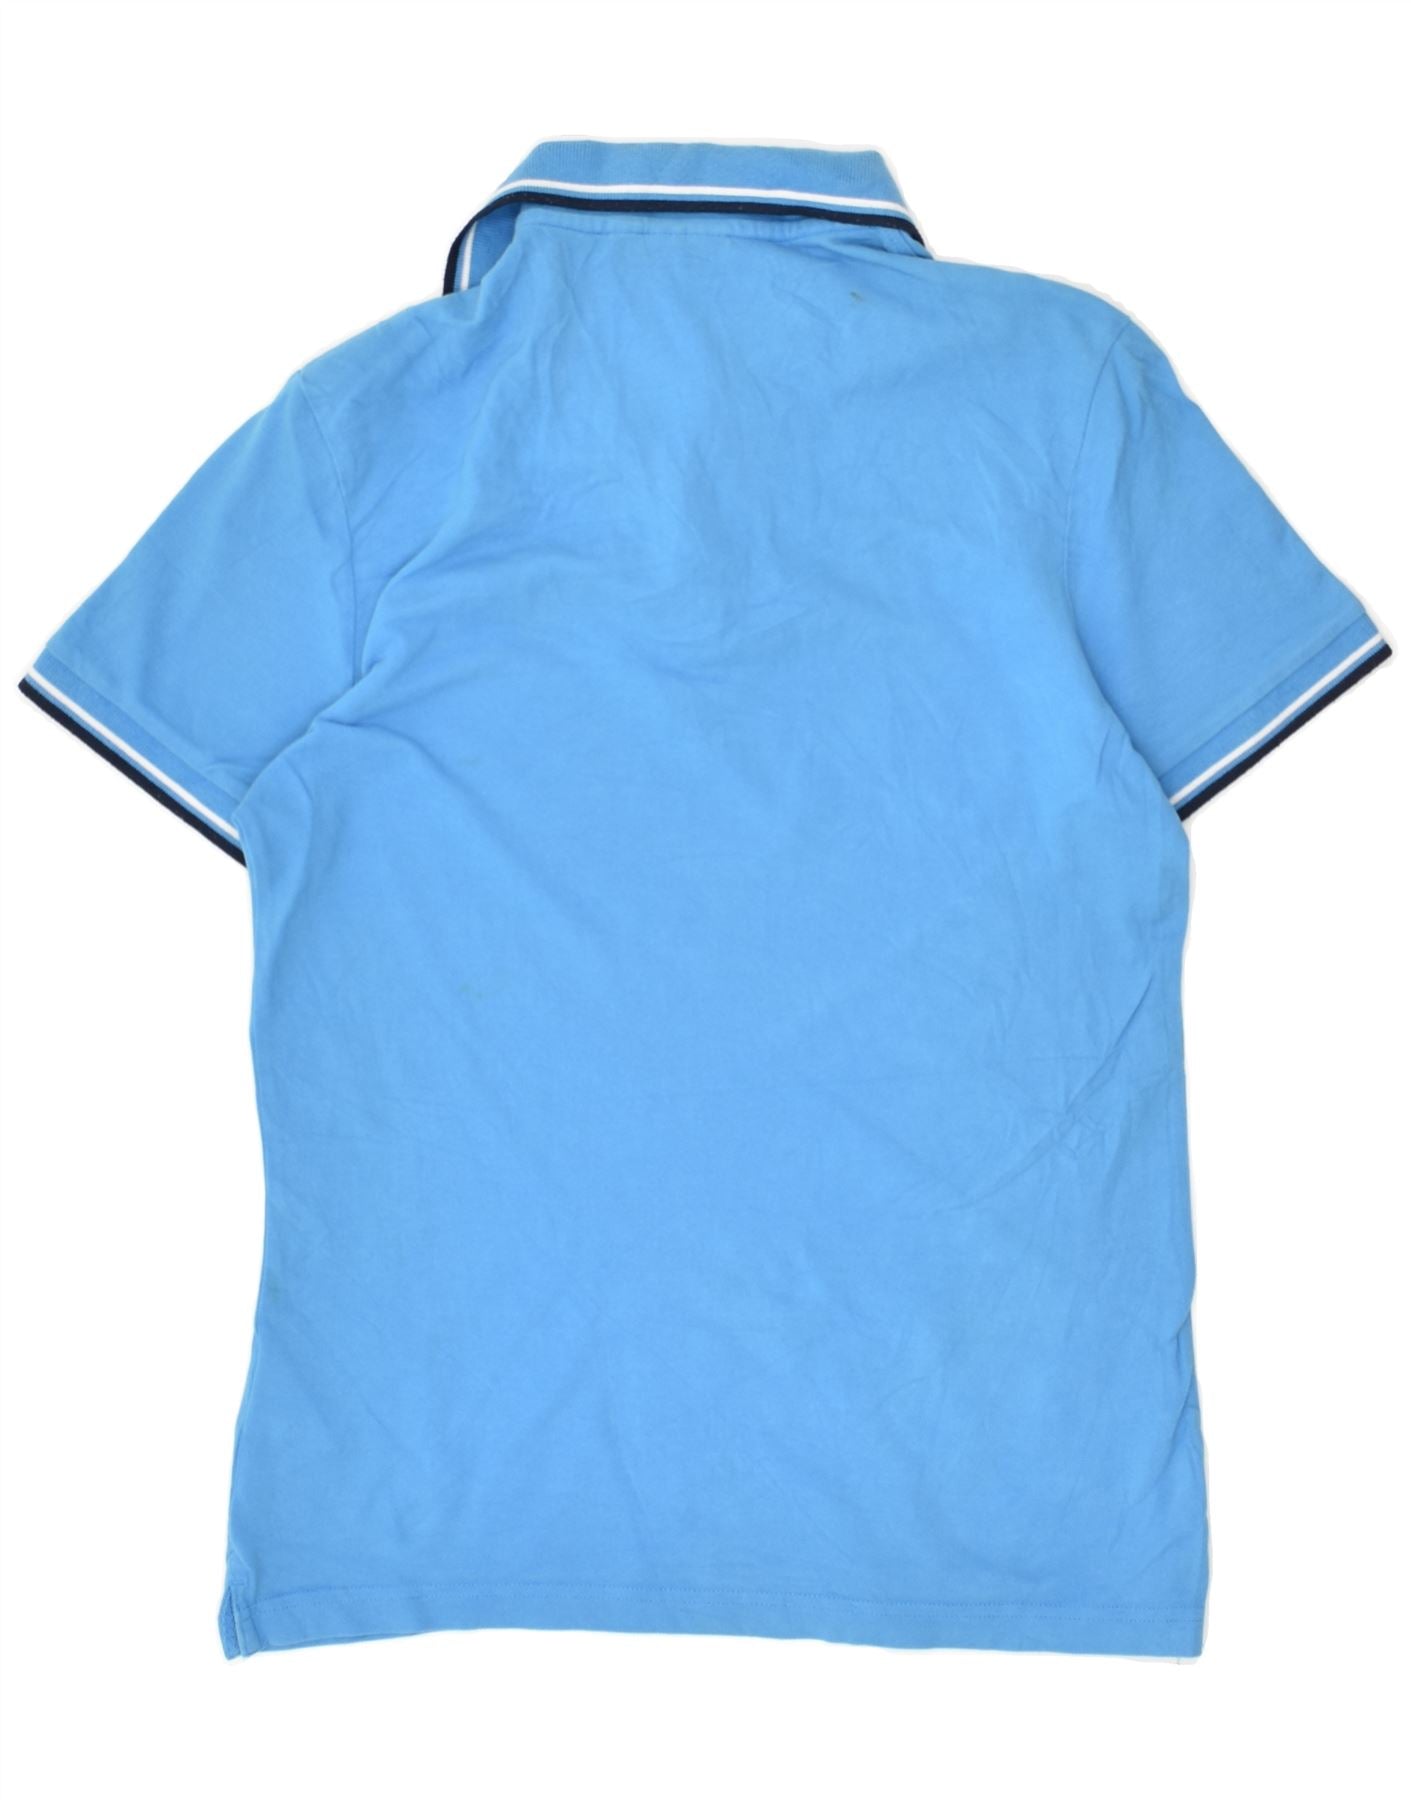 DIADORA Mens Polo Shirt Small Blue Cotton